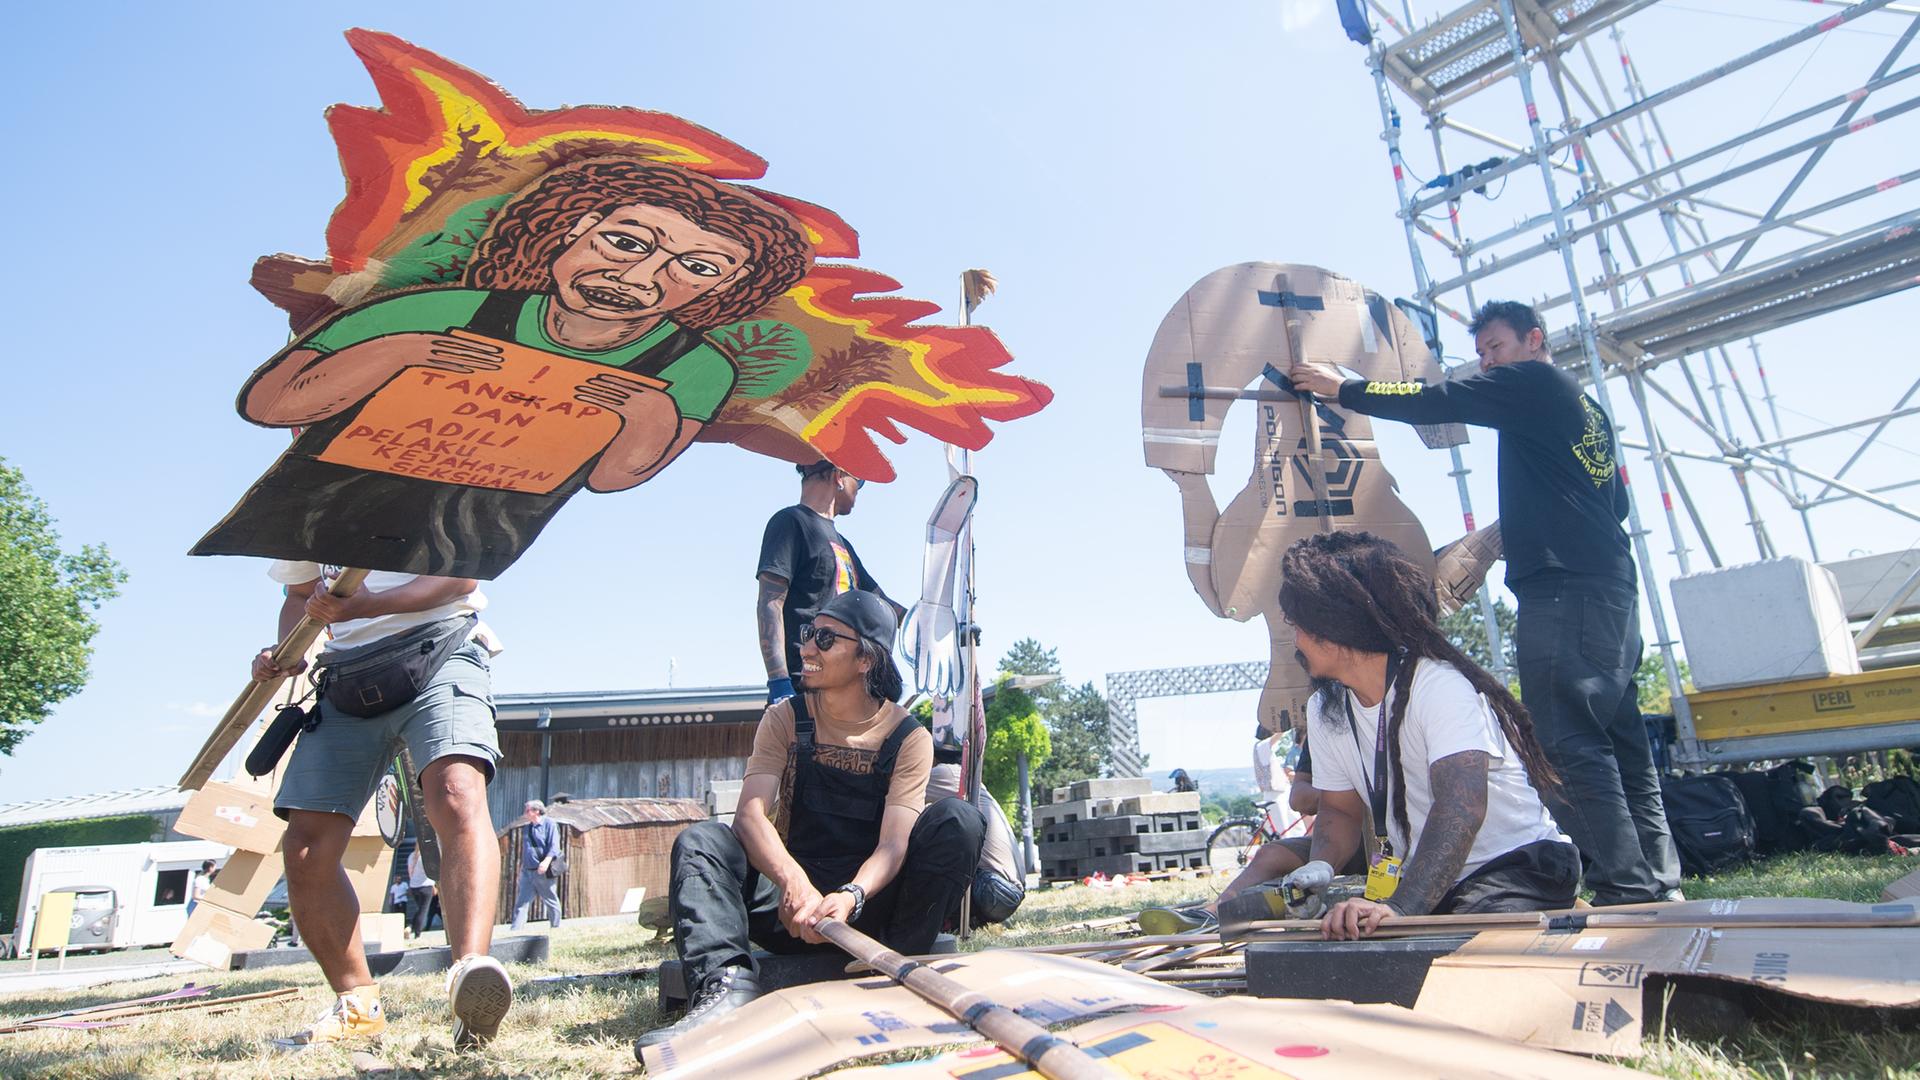 Mitglieder des indonesischen Kunstkollektivs "Taring Padi" stellen überlebensgroße Pappfiguren auf.